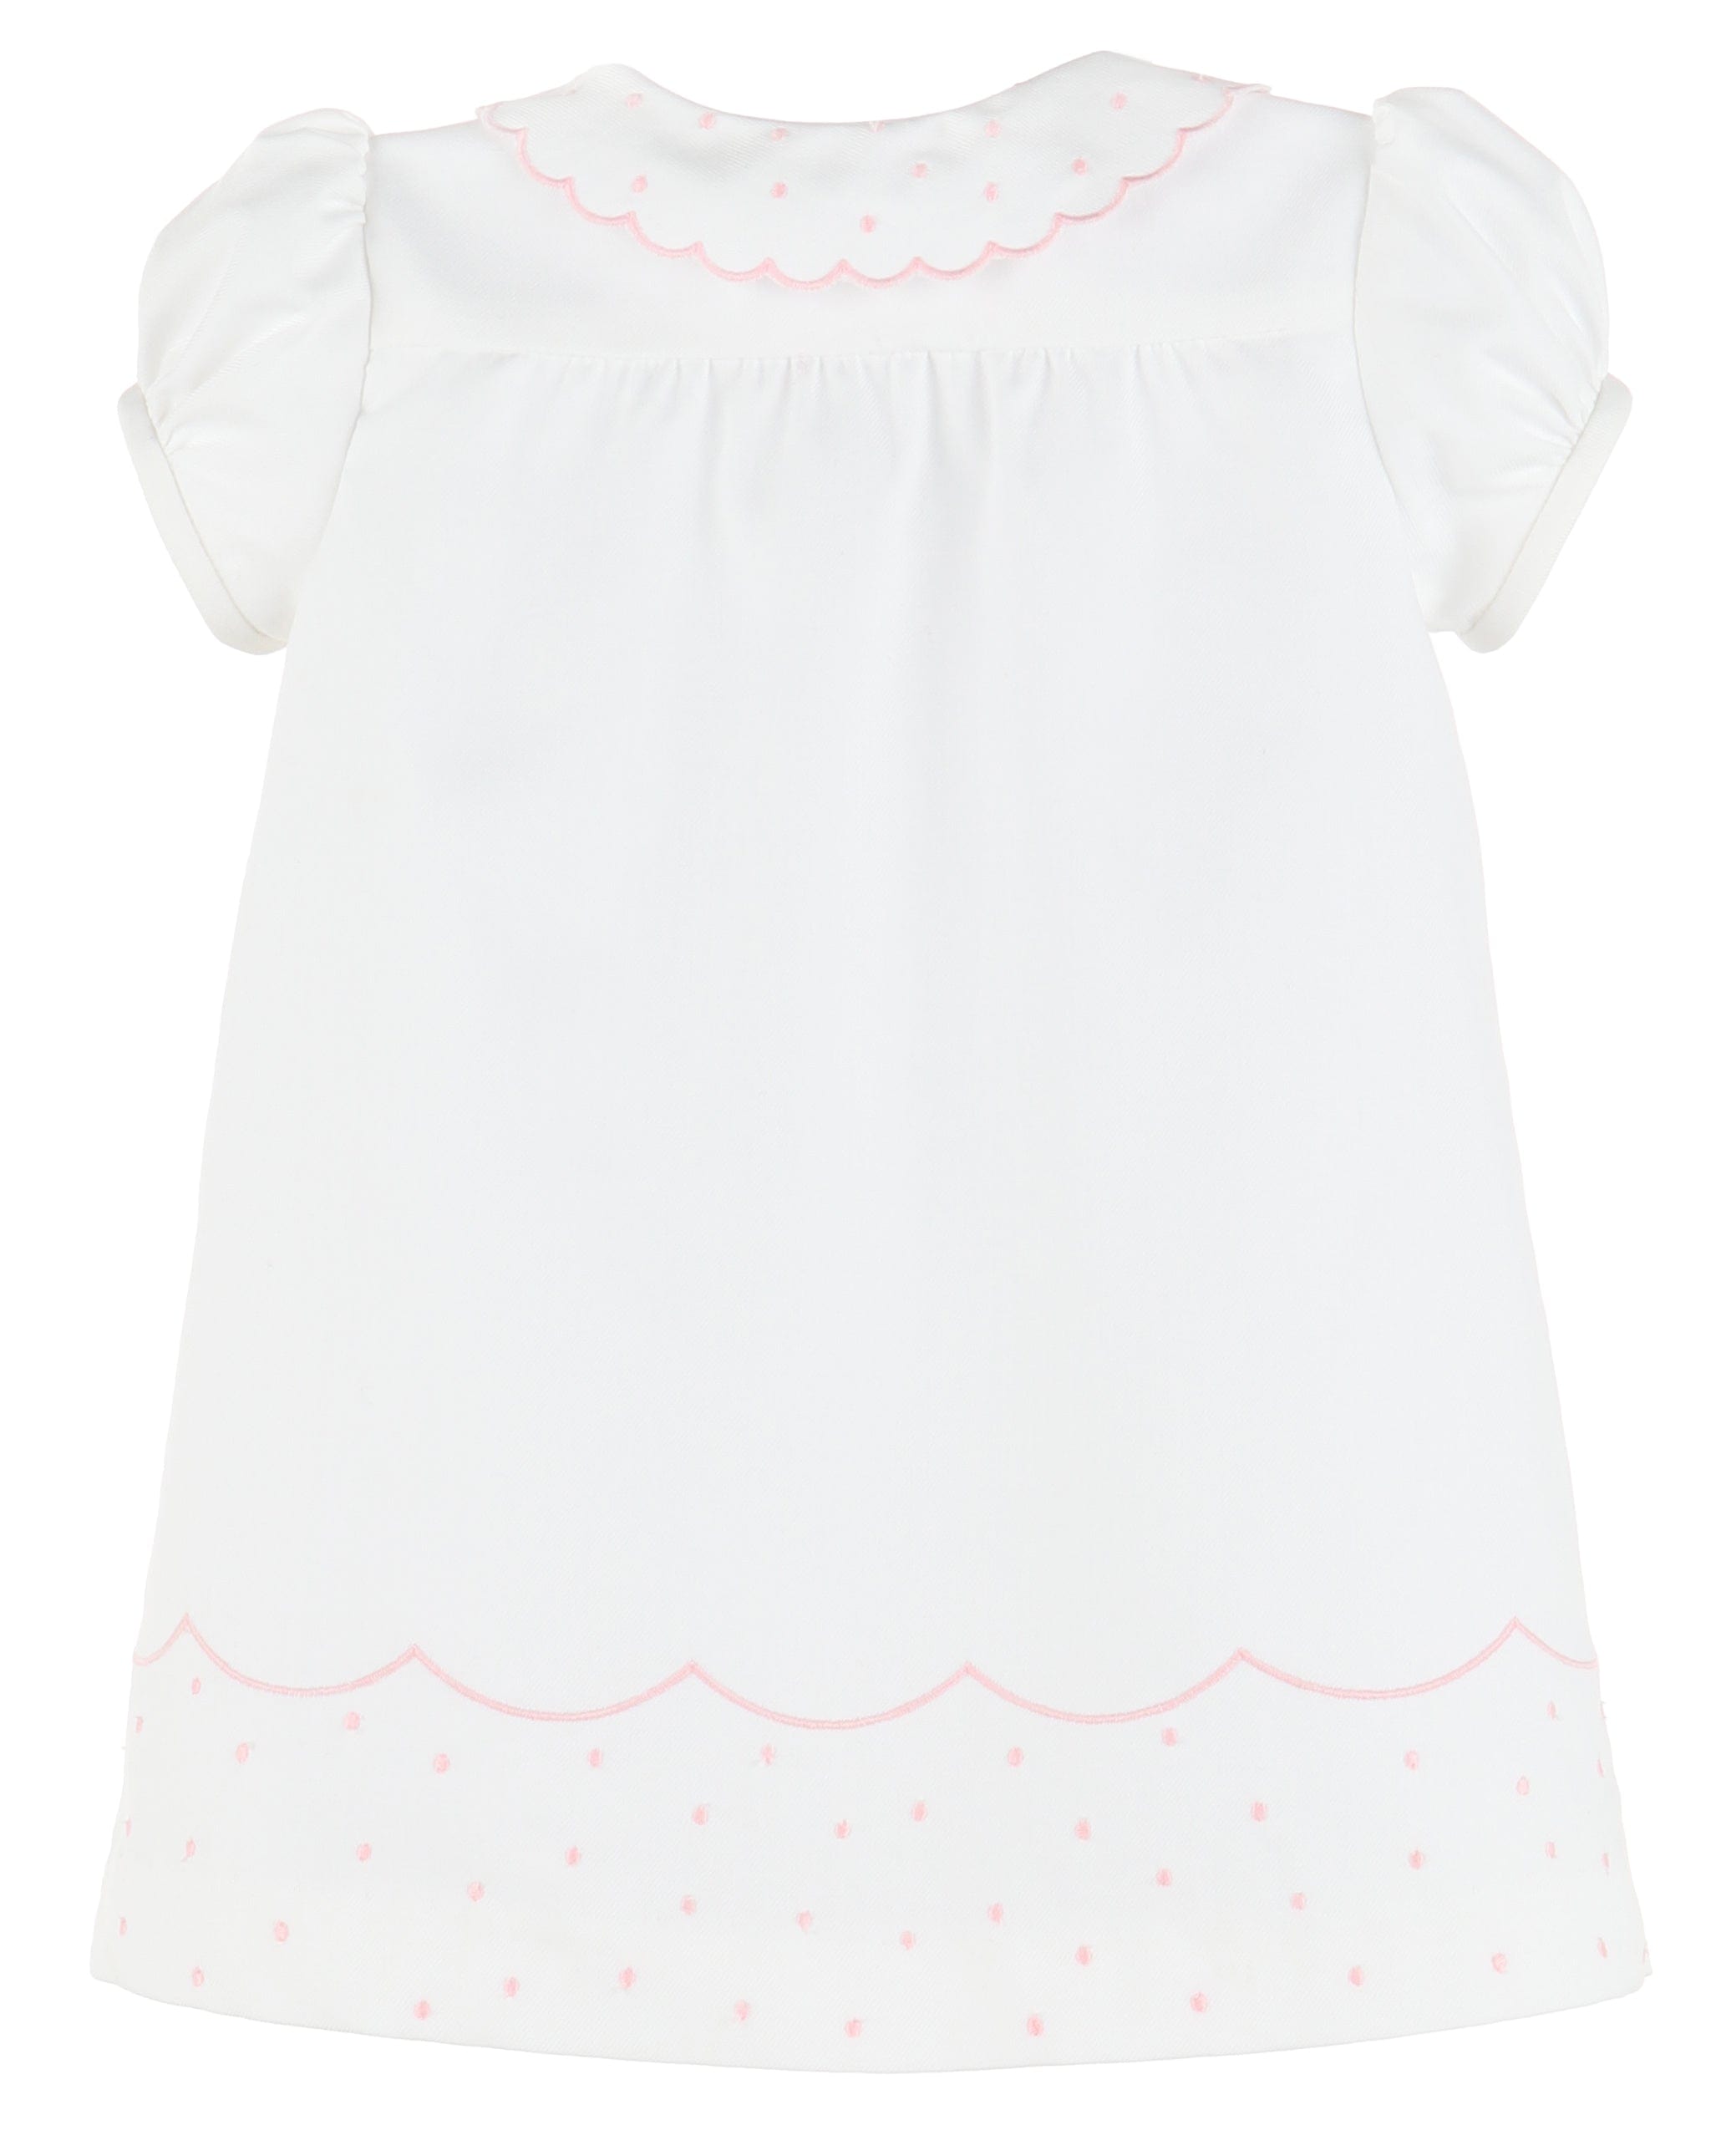 C&A - Casero & Associates Casero & Associates Scallops Daygown - Little Miss Muffin Children & Home